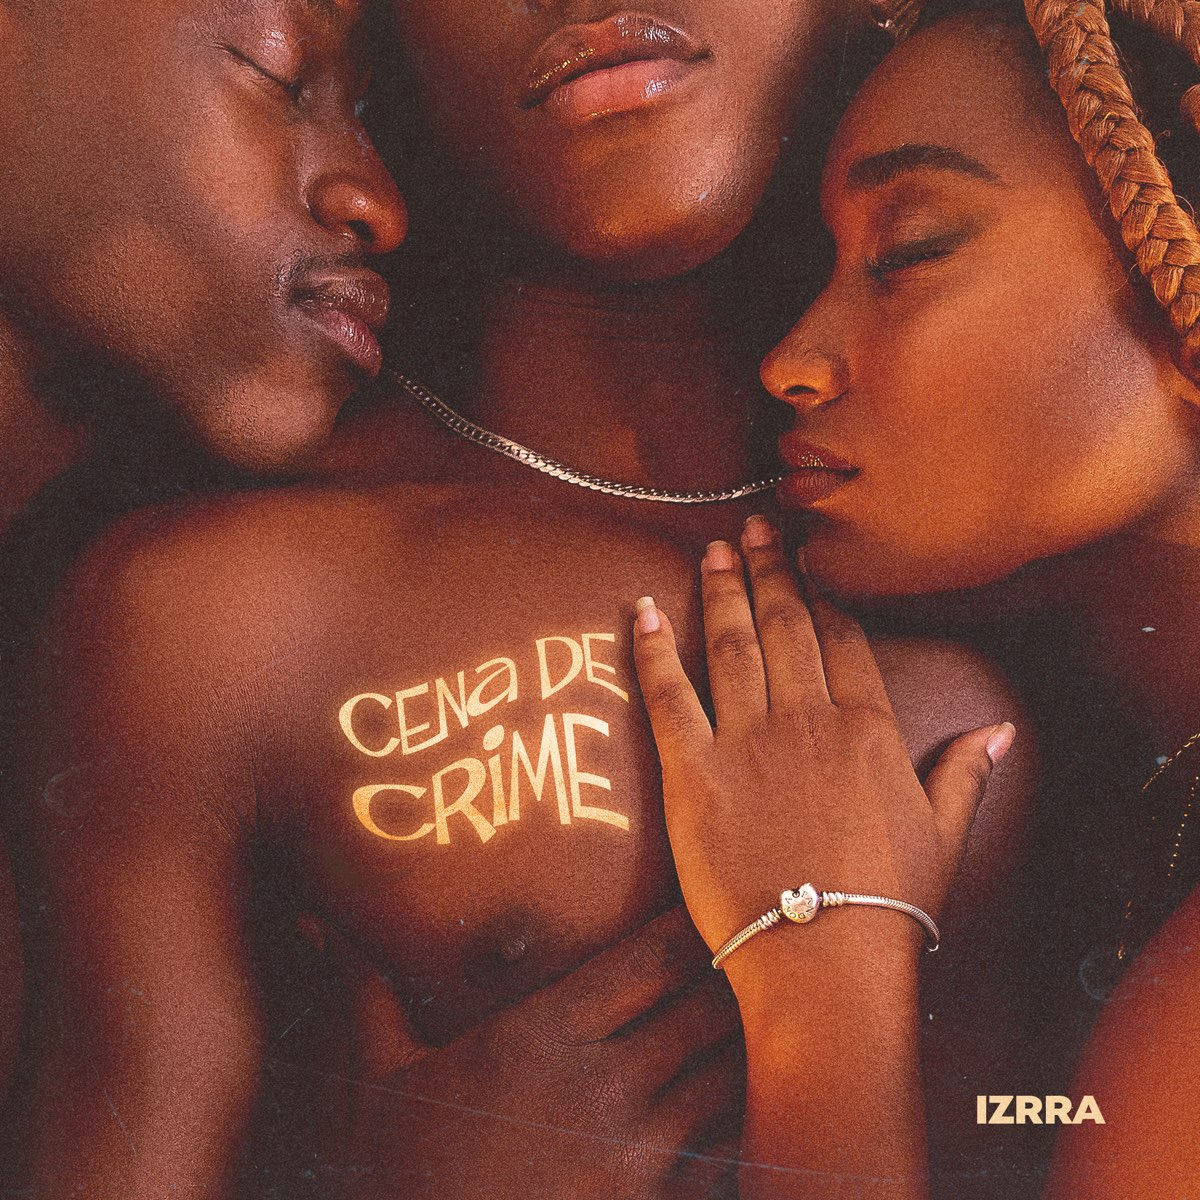 IZRRA — CENA DE CRIME cover artwork